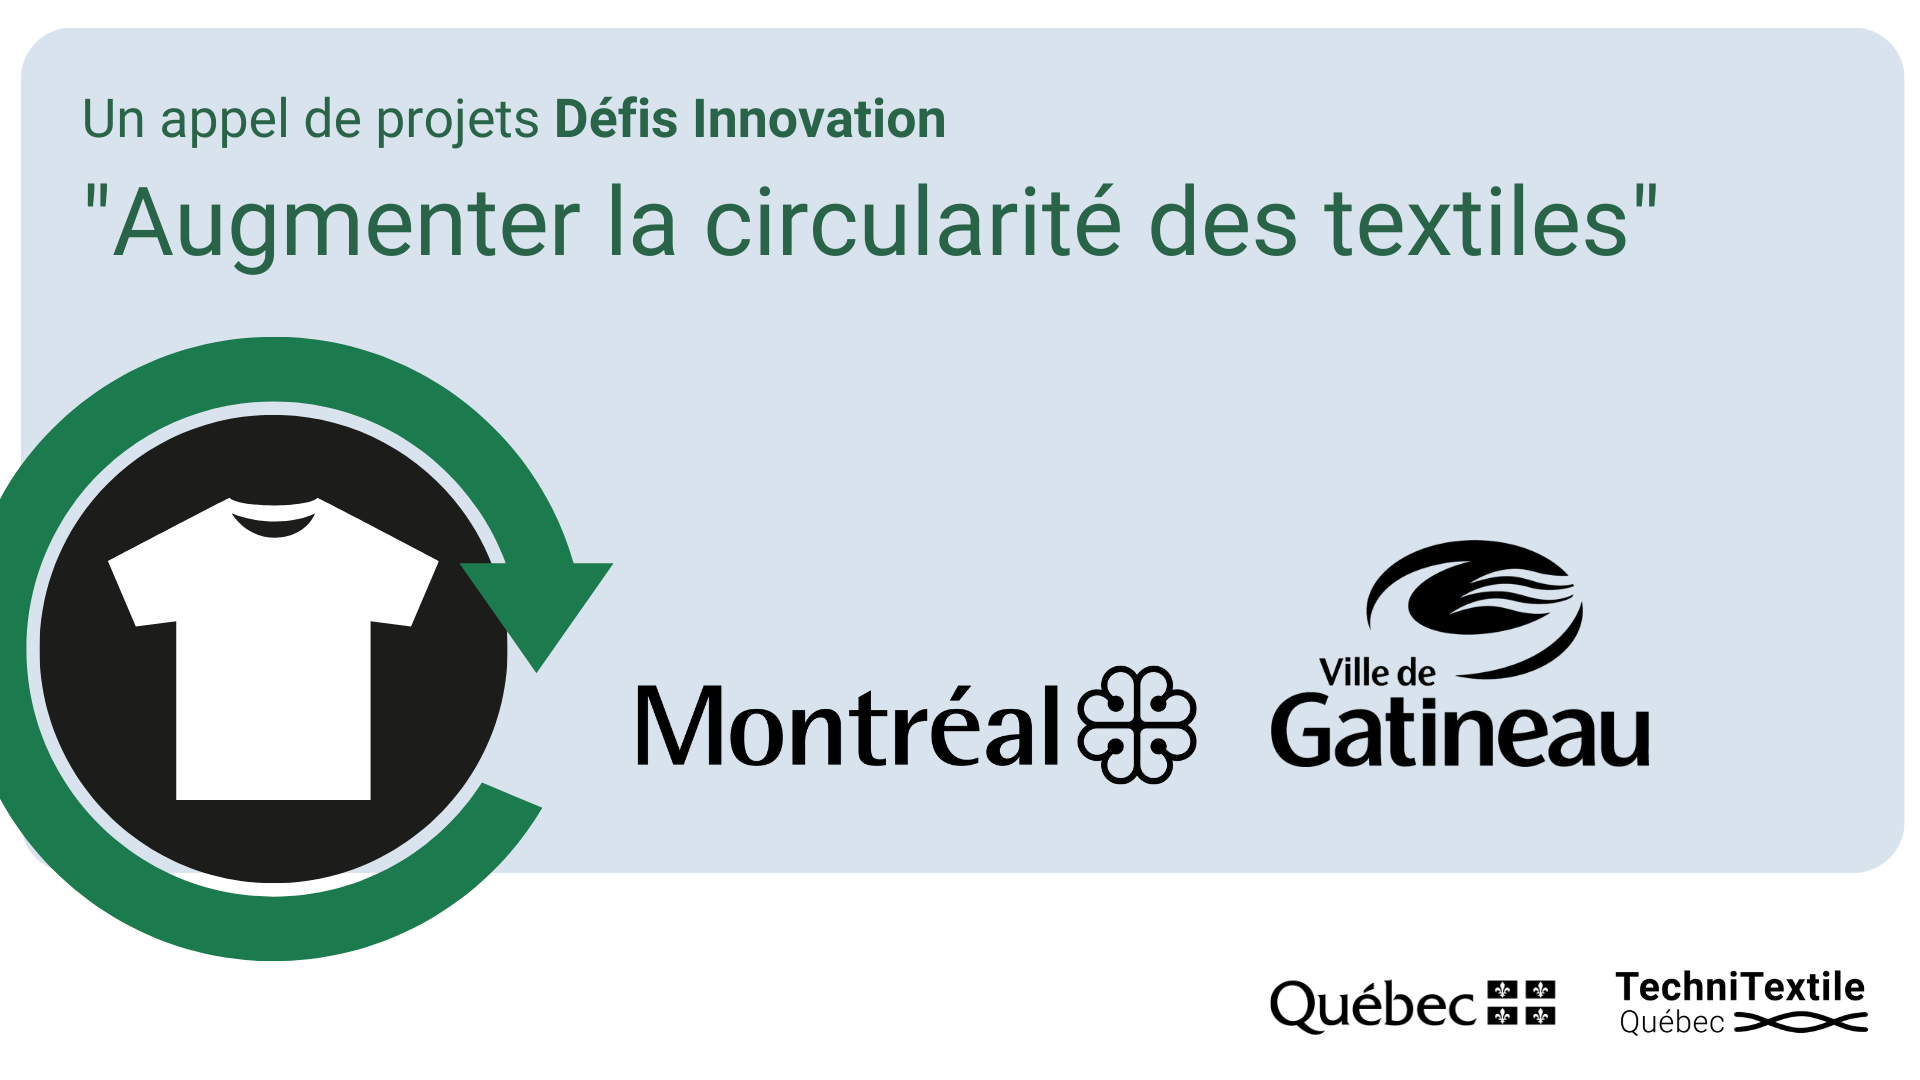 Les villes de Montréal et de Gatineau lancent un Défi Innovation pour augmenter la circularité des textiles